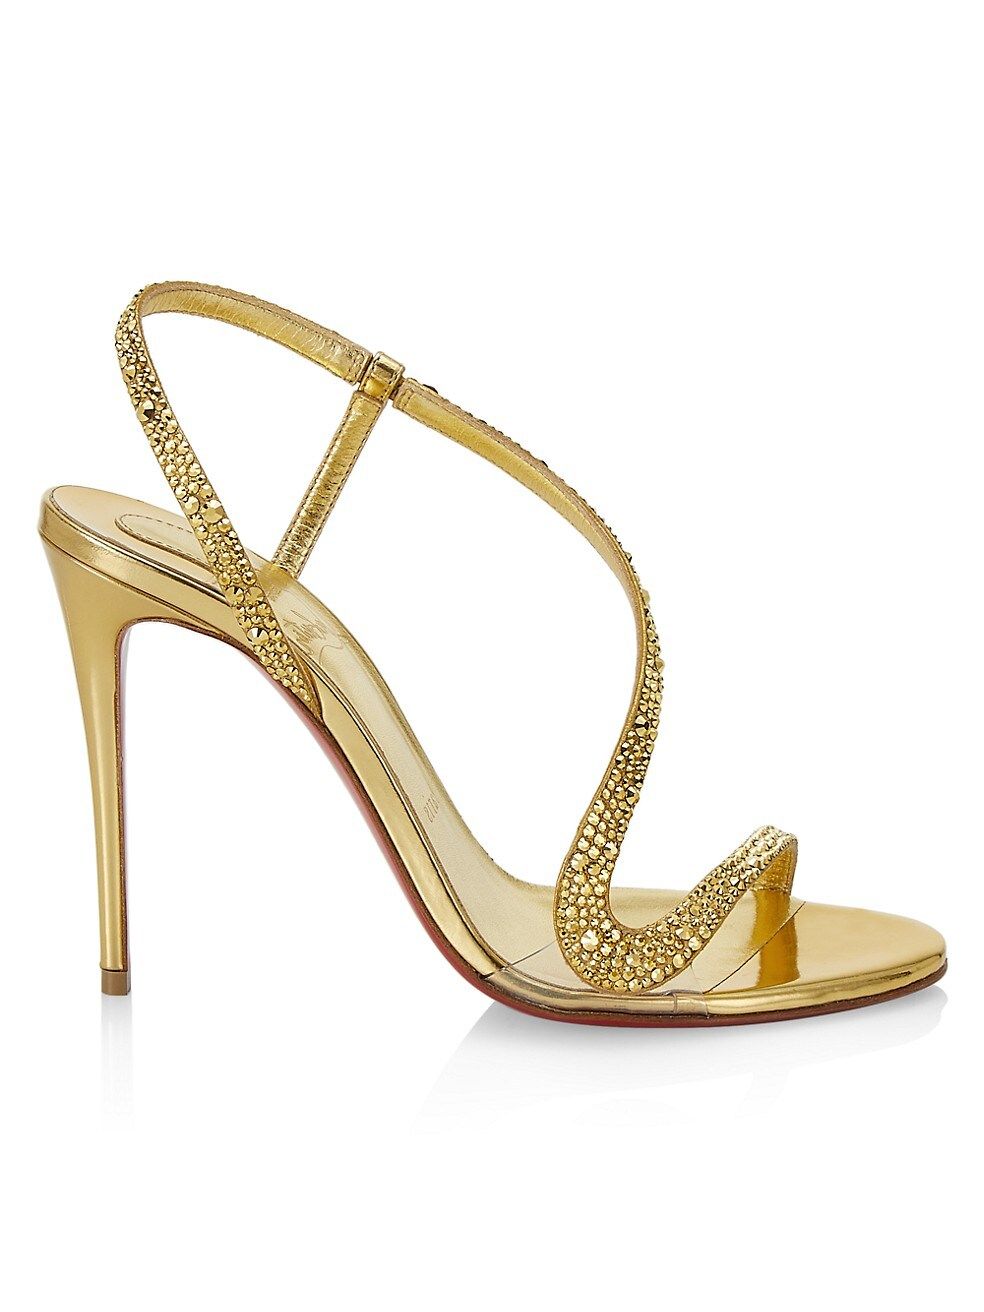 Rosalie 100 Embellished Metallic Suede Slingback Sandals | Saks Fifth Avenue